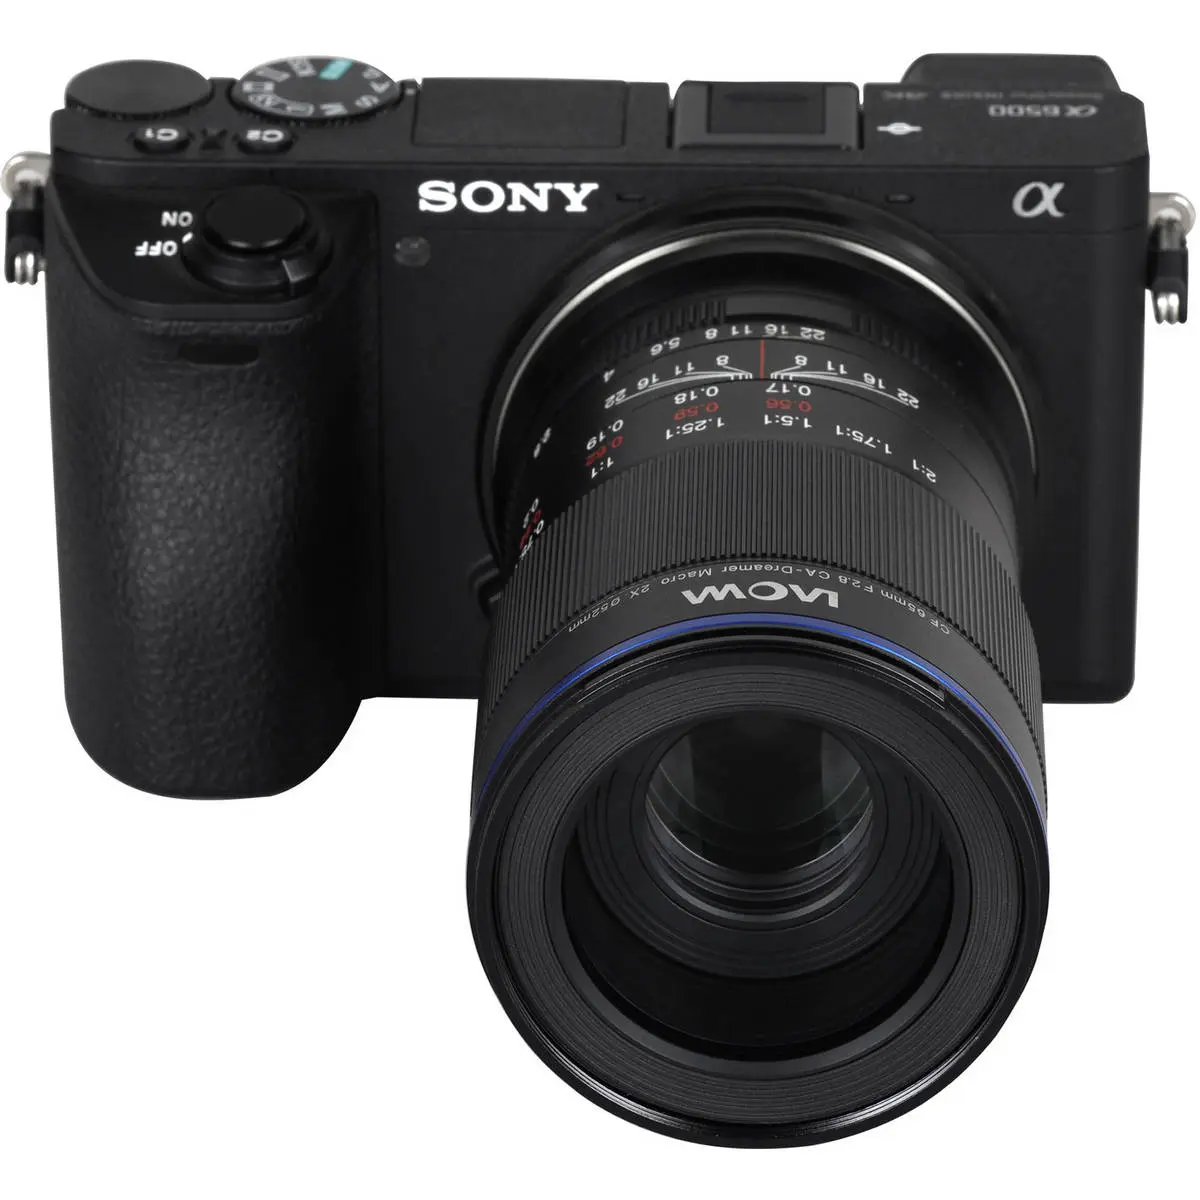 6. Laowa Lens 65mm f/2.8 2x Ultra Macro APO (Sony E)